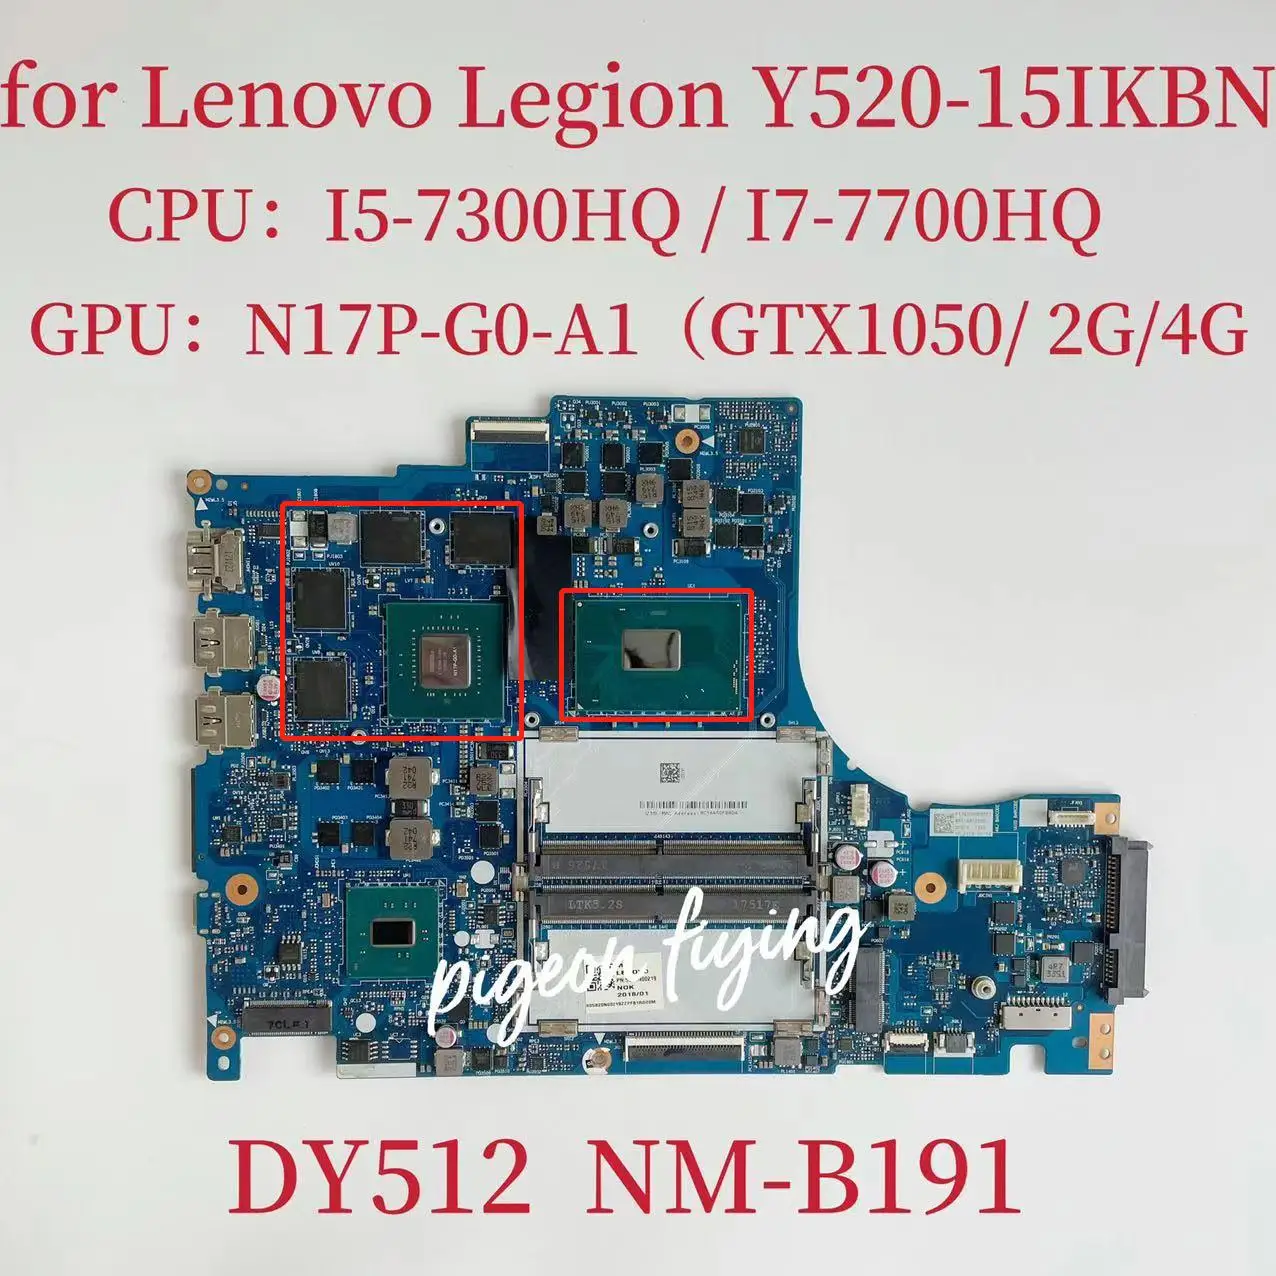 

NM-B191 Mainboard For Lenovo Legion Y520-15IKBN Laptop Motherboard CPU:I5-7300HQ I7-7700HQ GPU:N17P-G0-A1 GTX1050 2G/4G Test OK